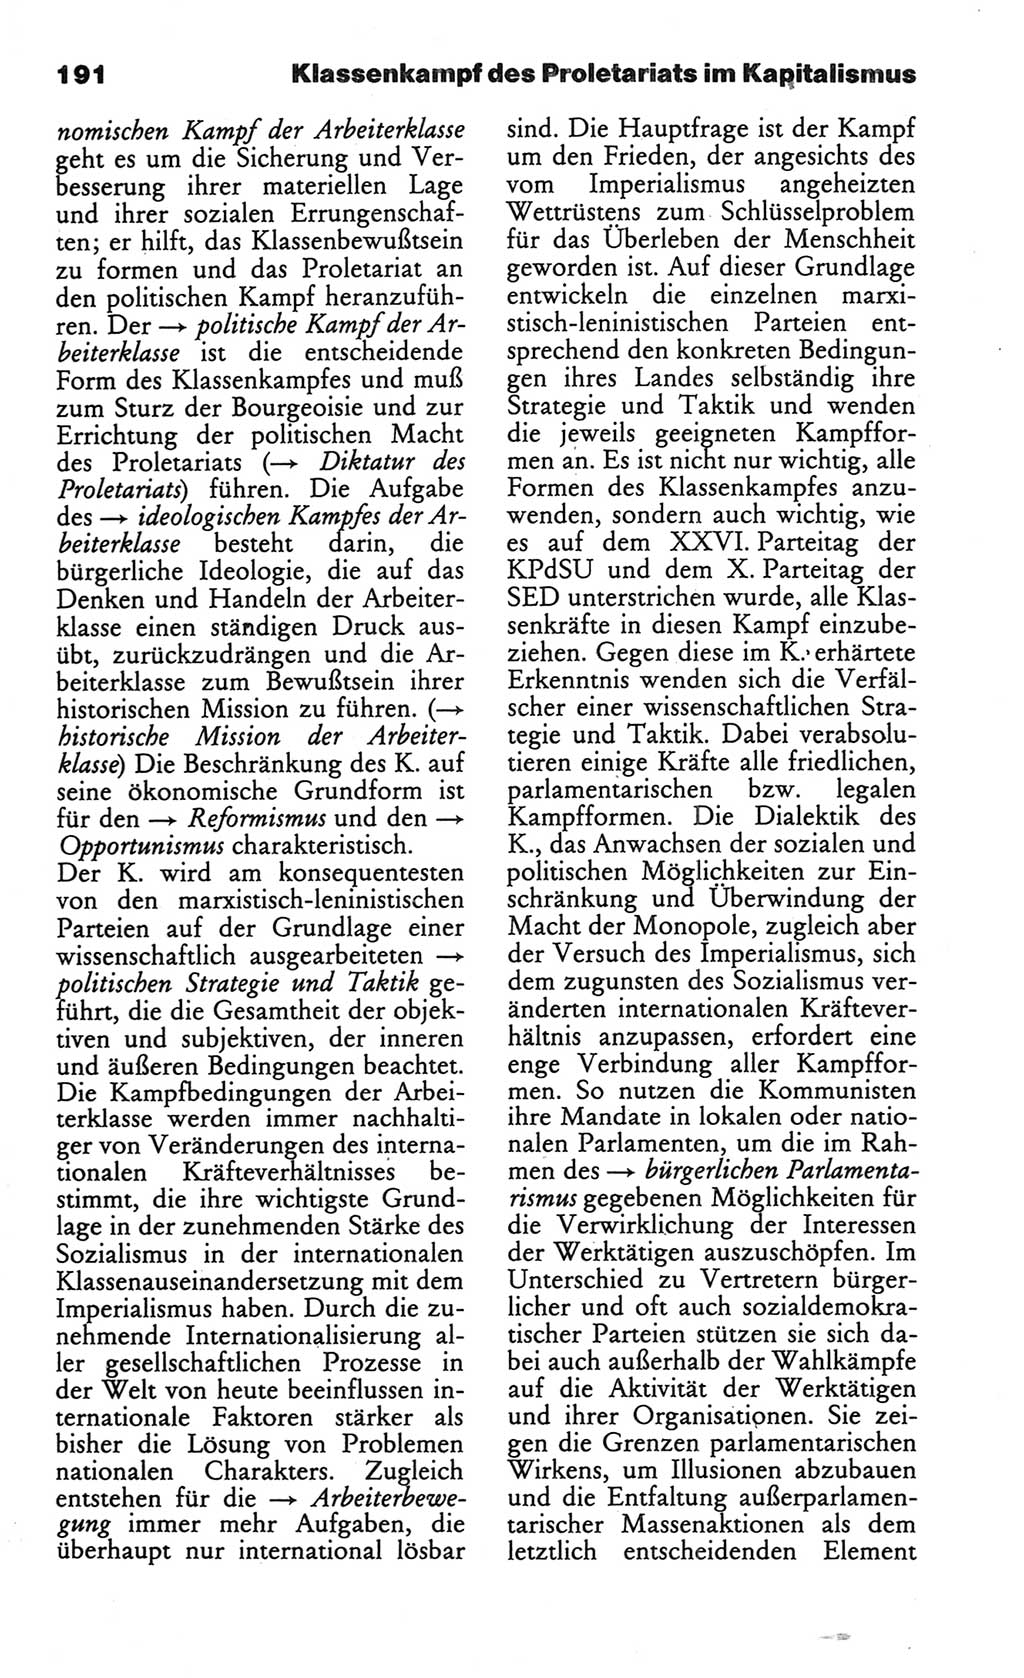 Wörterbuch des wissenschaftlichen Kommunismus [Deutsche Demokratische Republik (DDR)] 1984, Seite 191 (Wb. wiss. Komm. DDR 1984, S. 191)